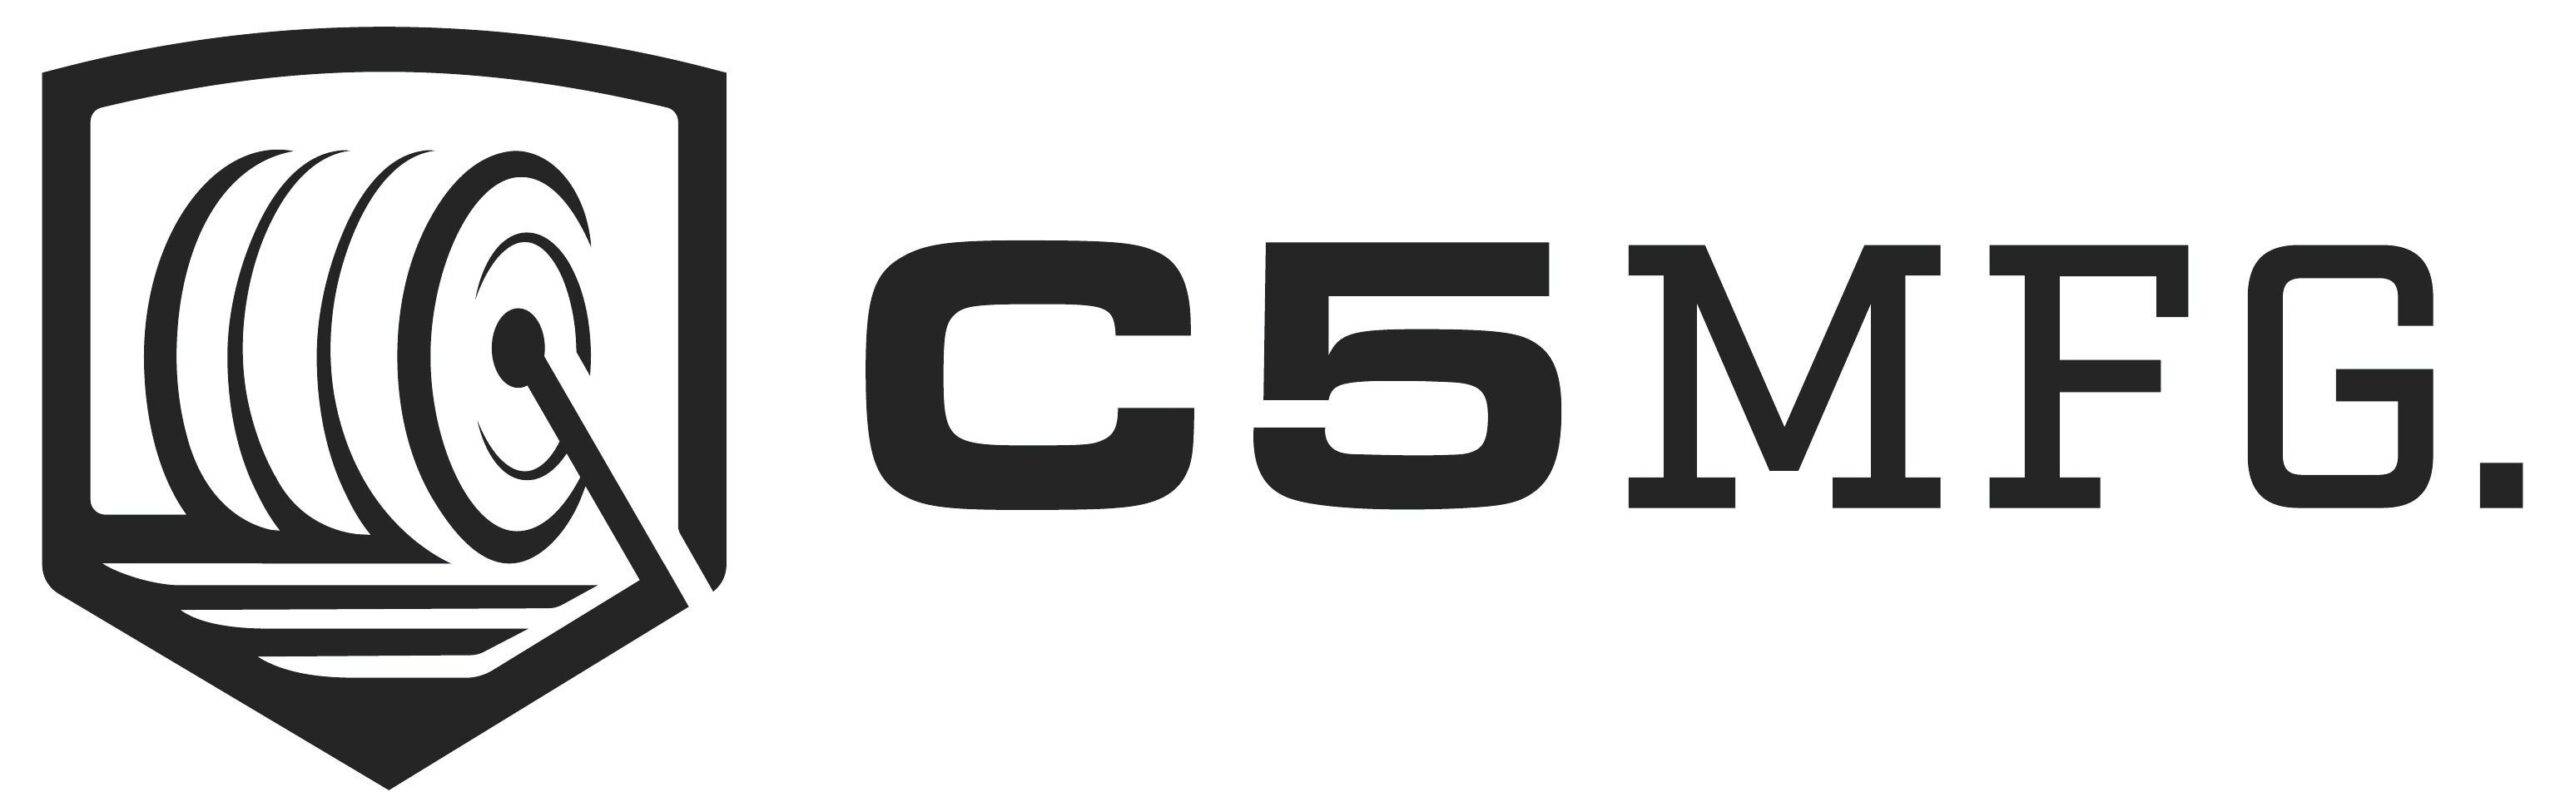 C5 Logo.jpg_1682971729